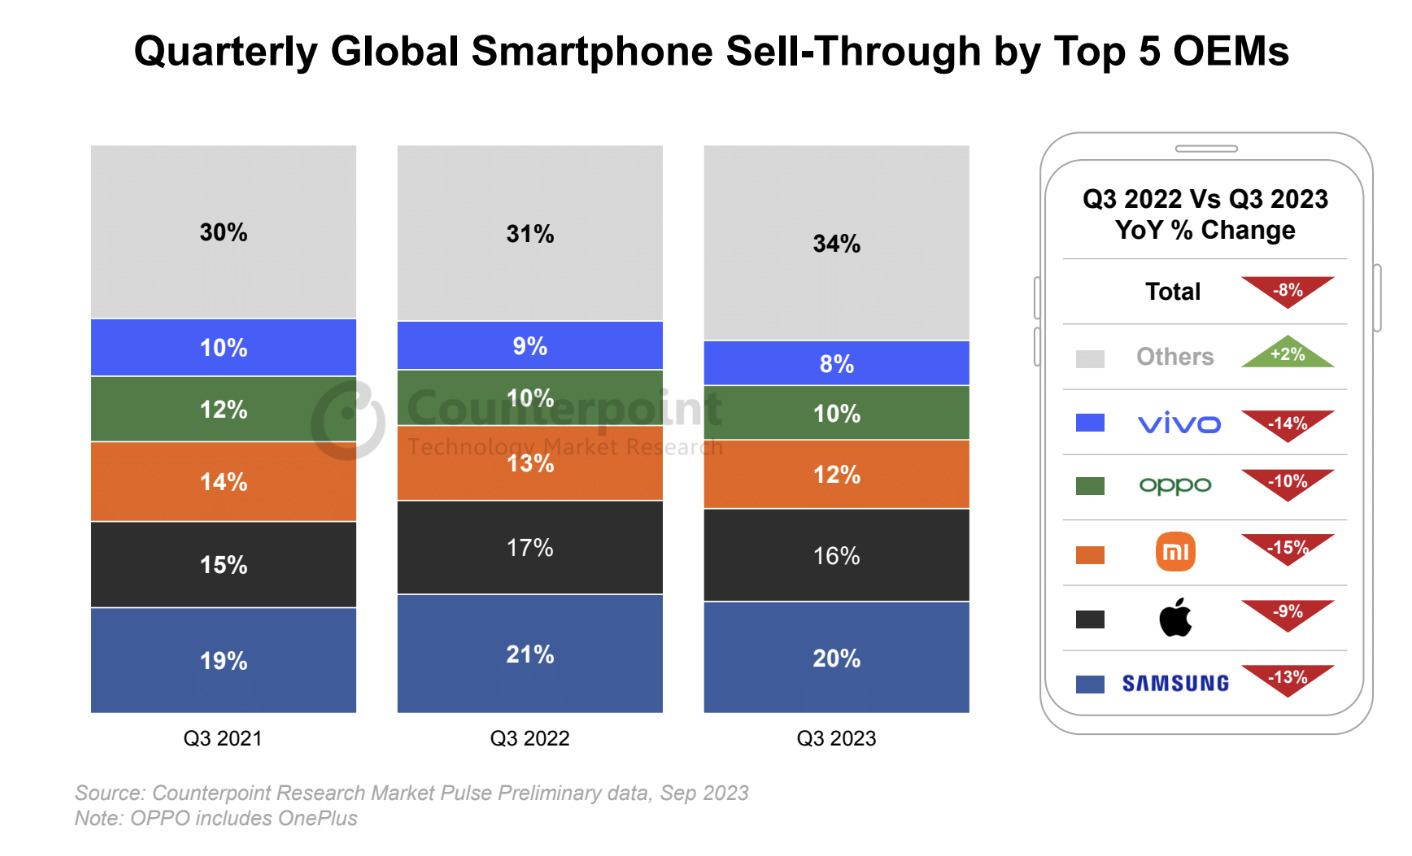 Nokia smartphones captured 1% of global market share in Q4 2017